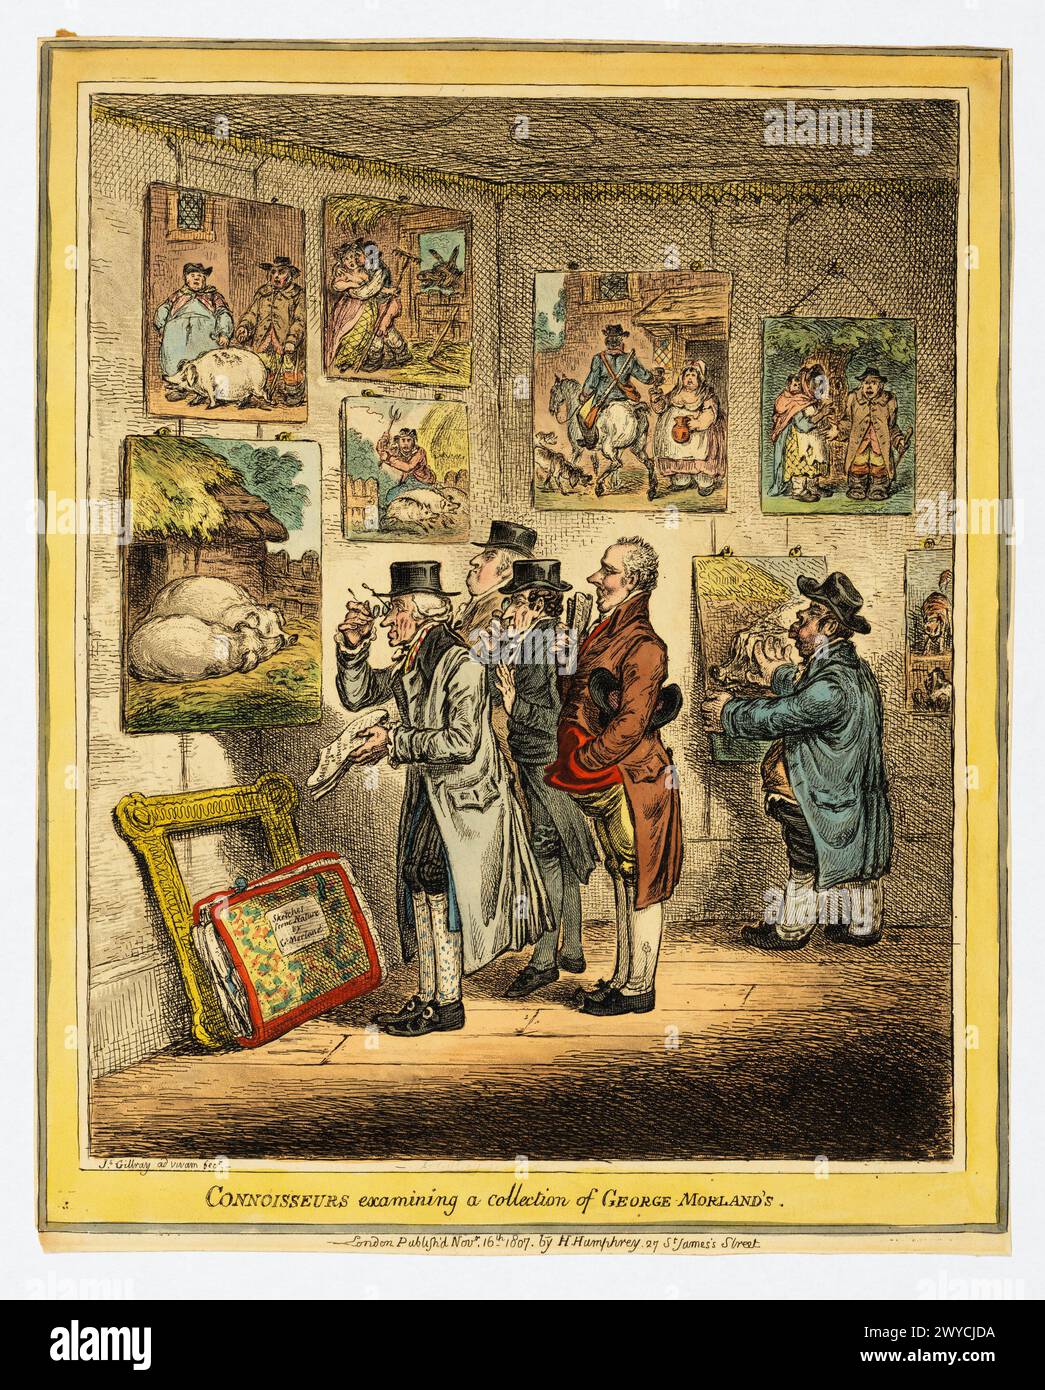 Gli intenditori che esaminano una collezione di George Morland James Gillray, pubblicato da Hannah Humphrey. 16 novembre 1807. Incisione colorata a mano. Foto Stock